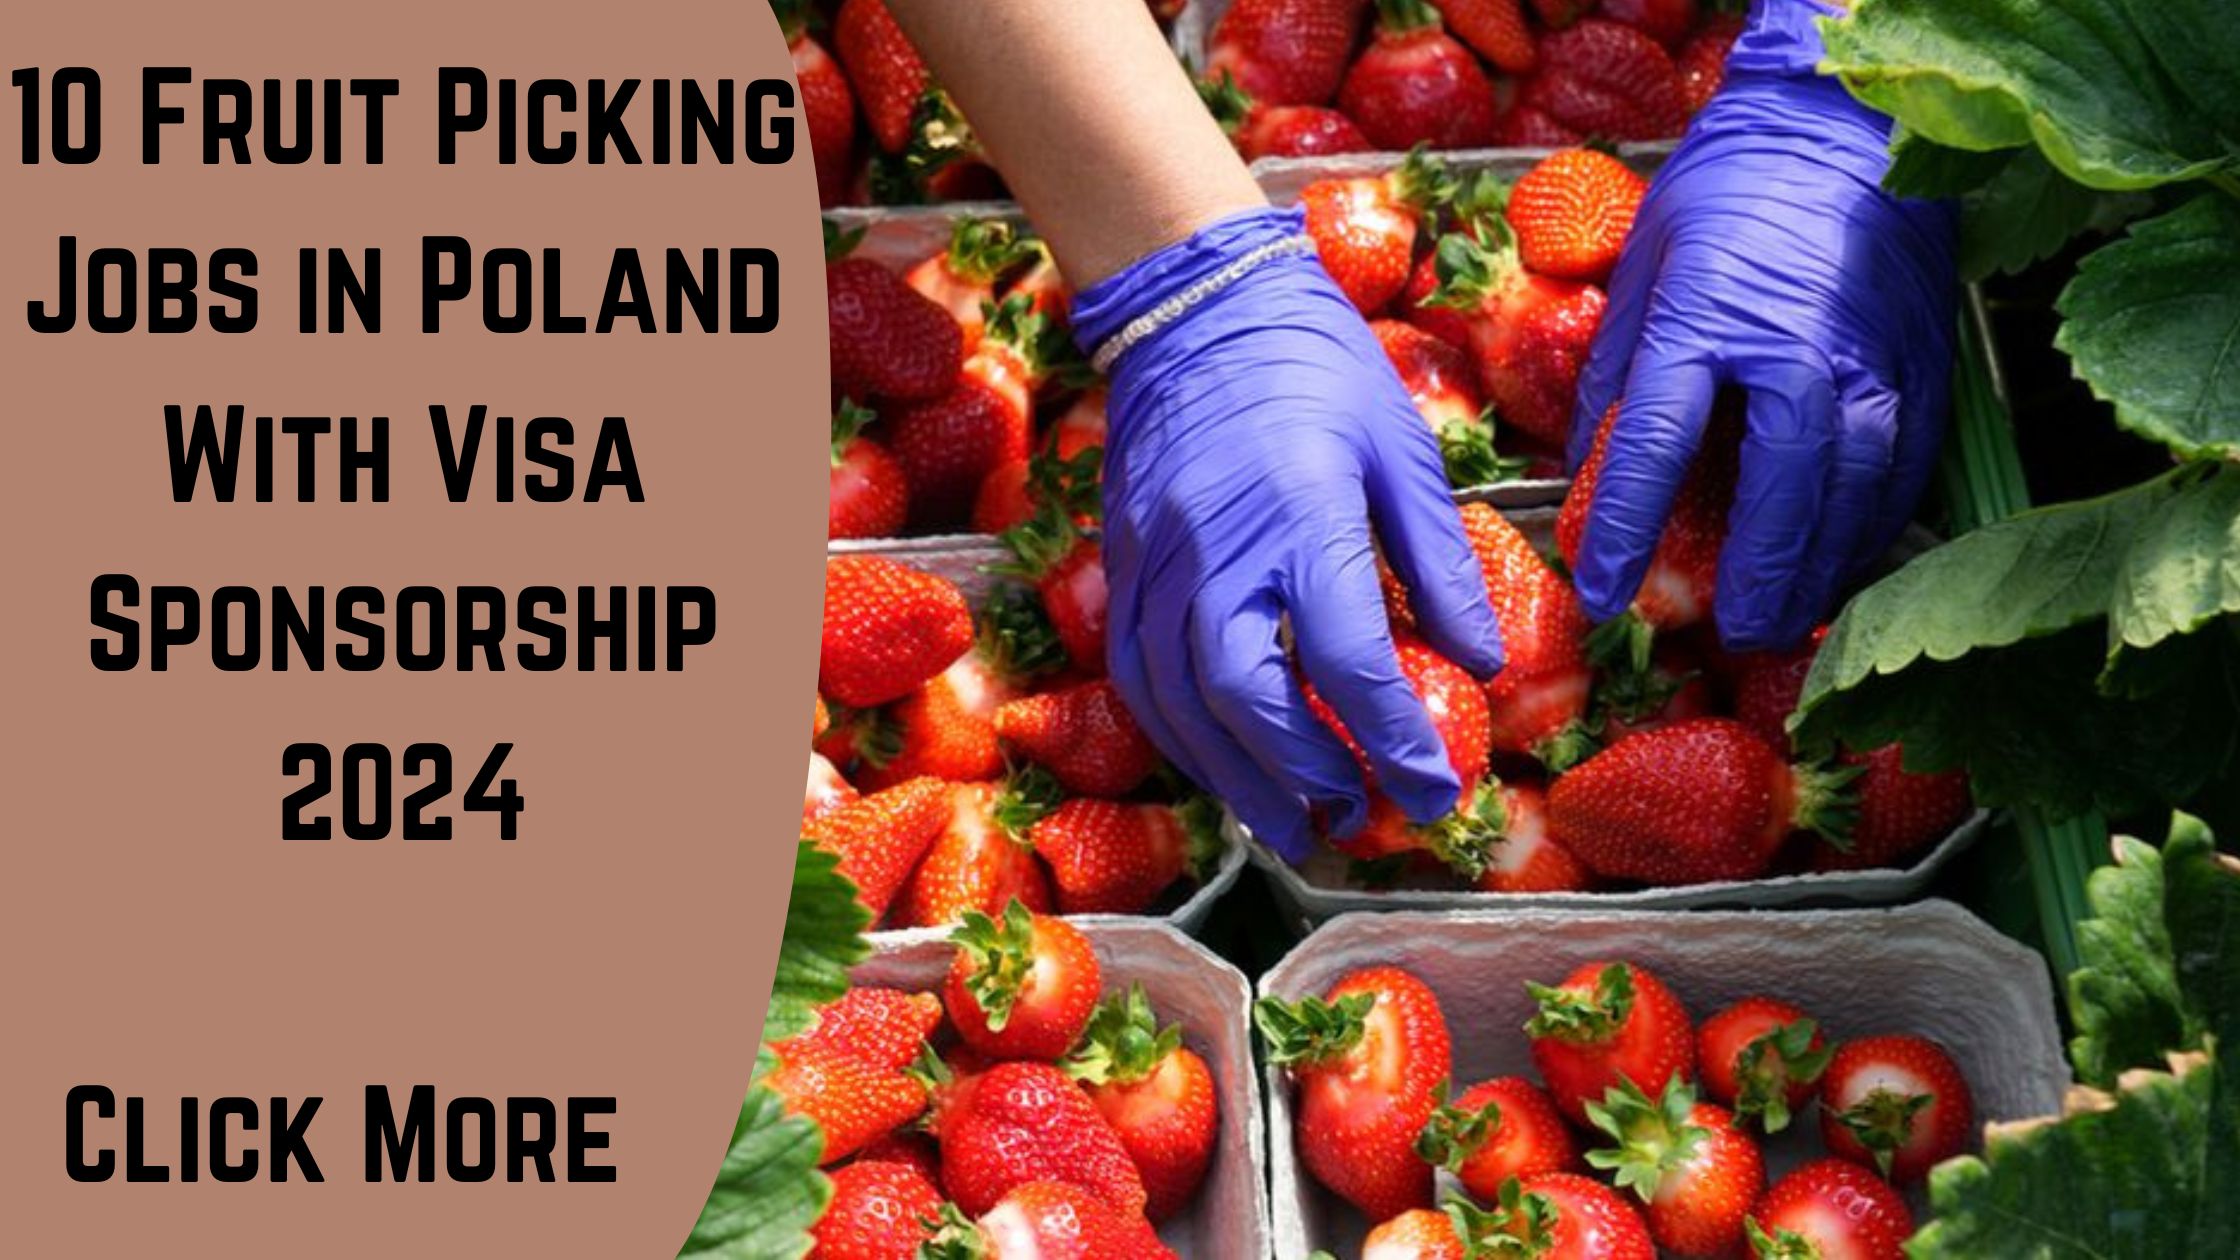 Fruit Picking Jobs in Poland With Visa Sponsorship